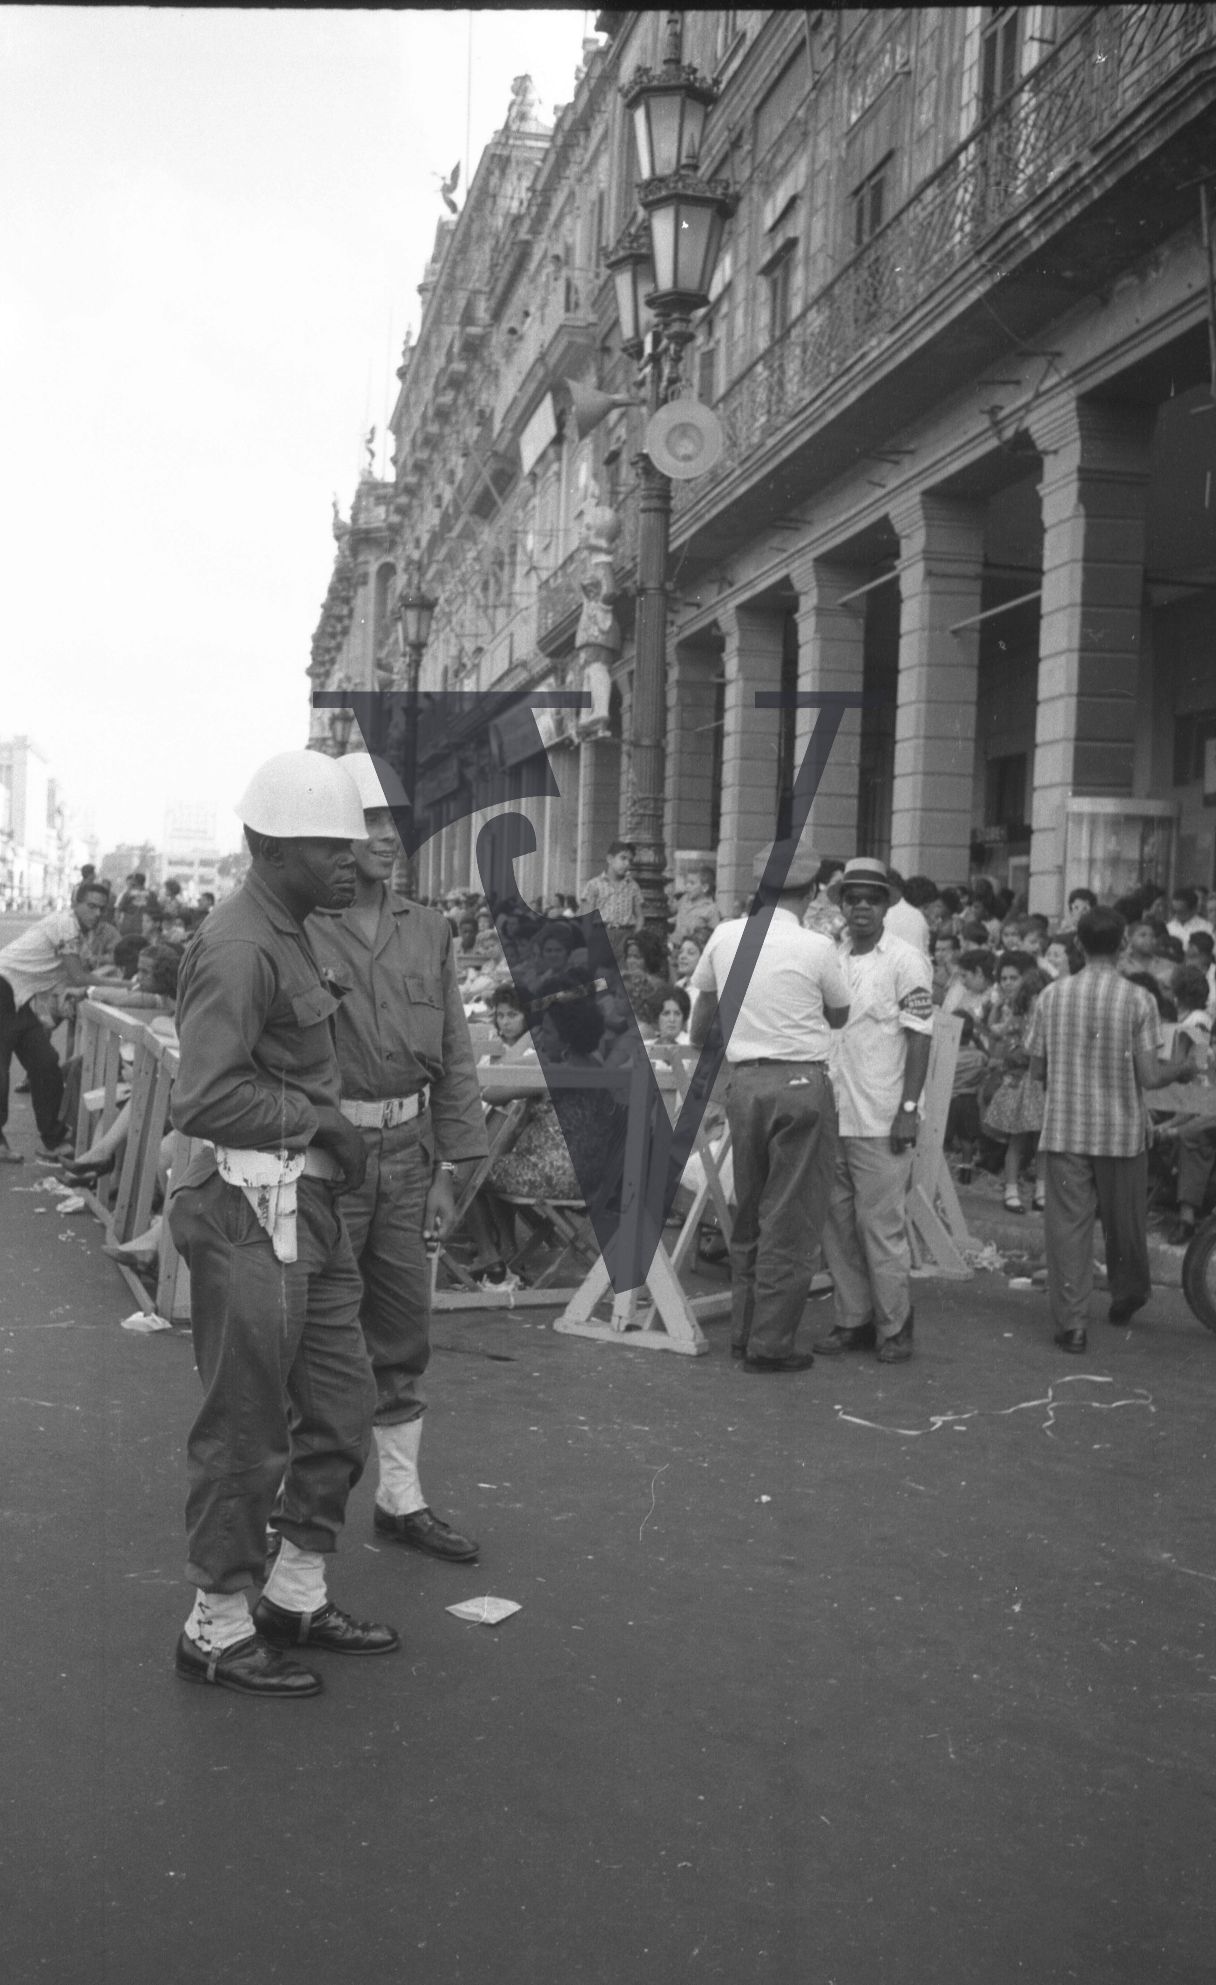 Cuba, Havana Carnival, police and parade.